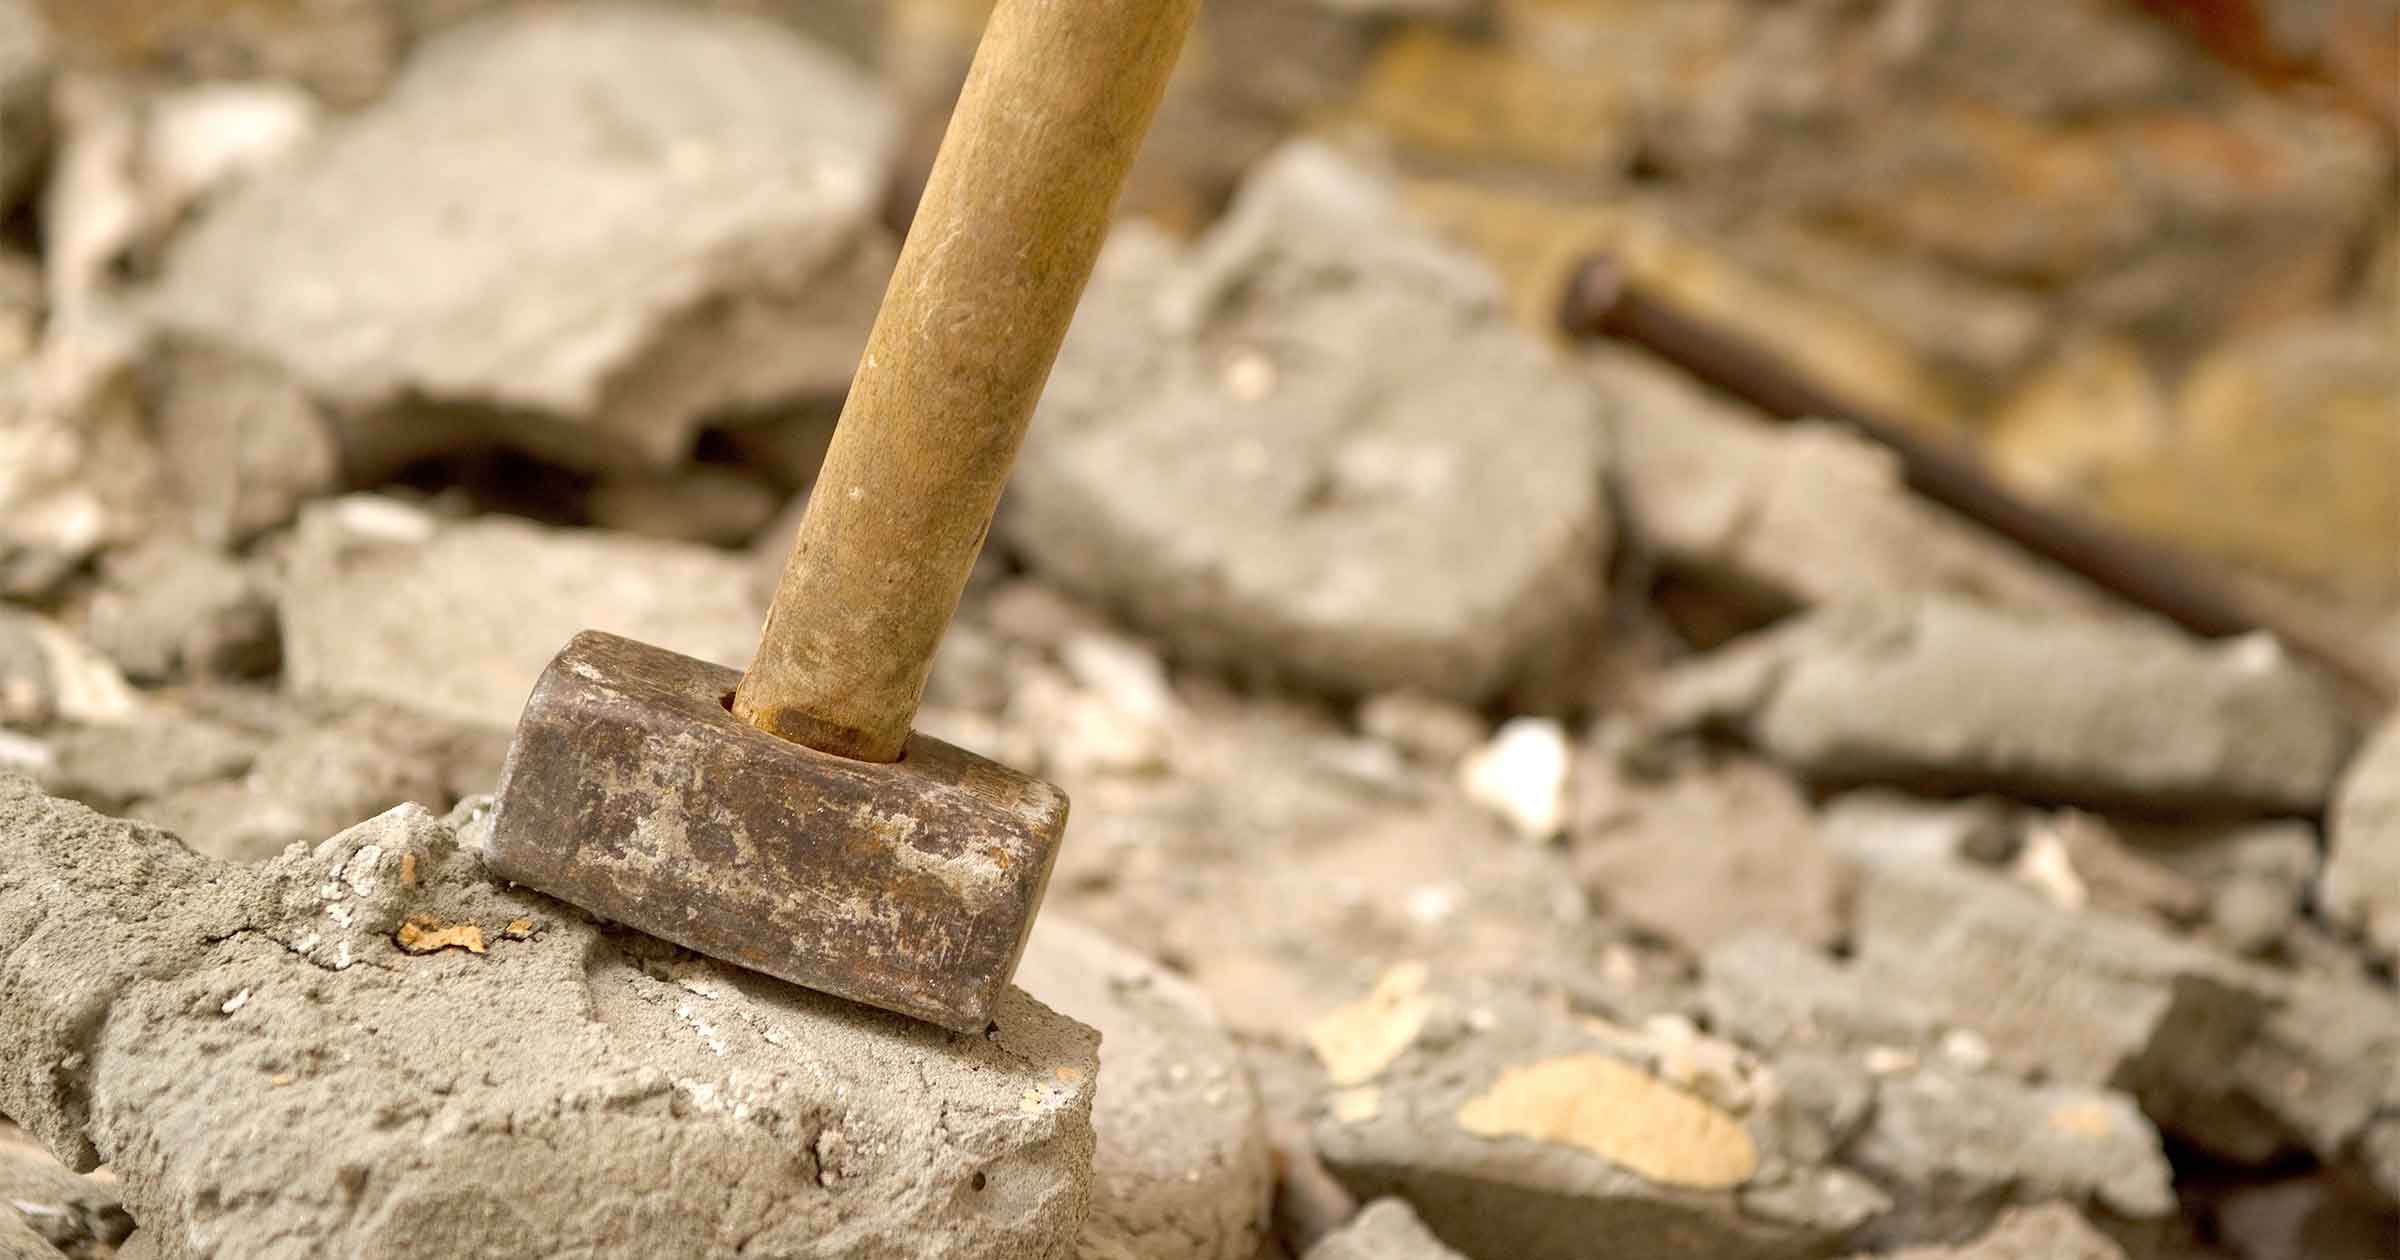 sledgehammer on broken concrete